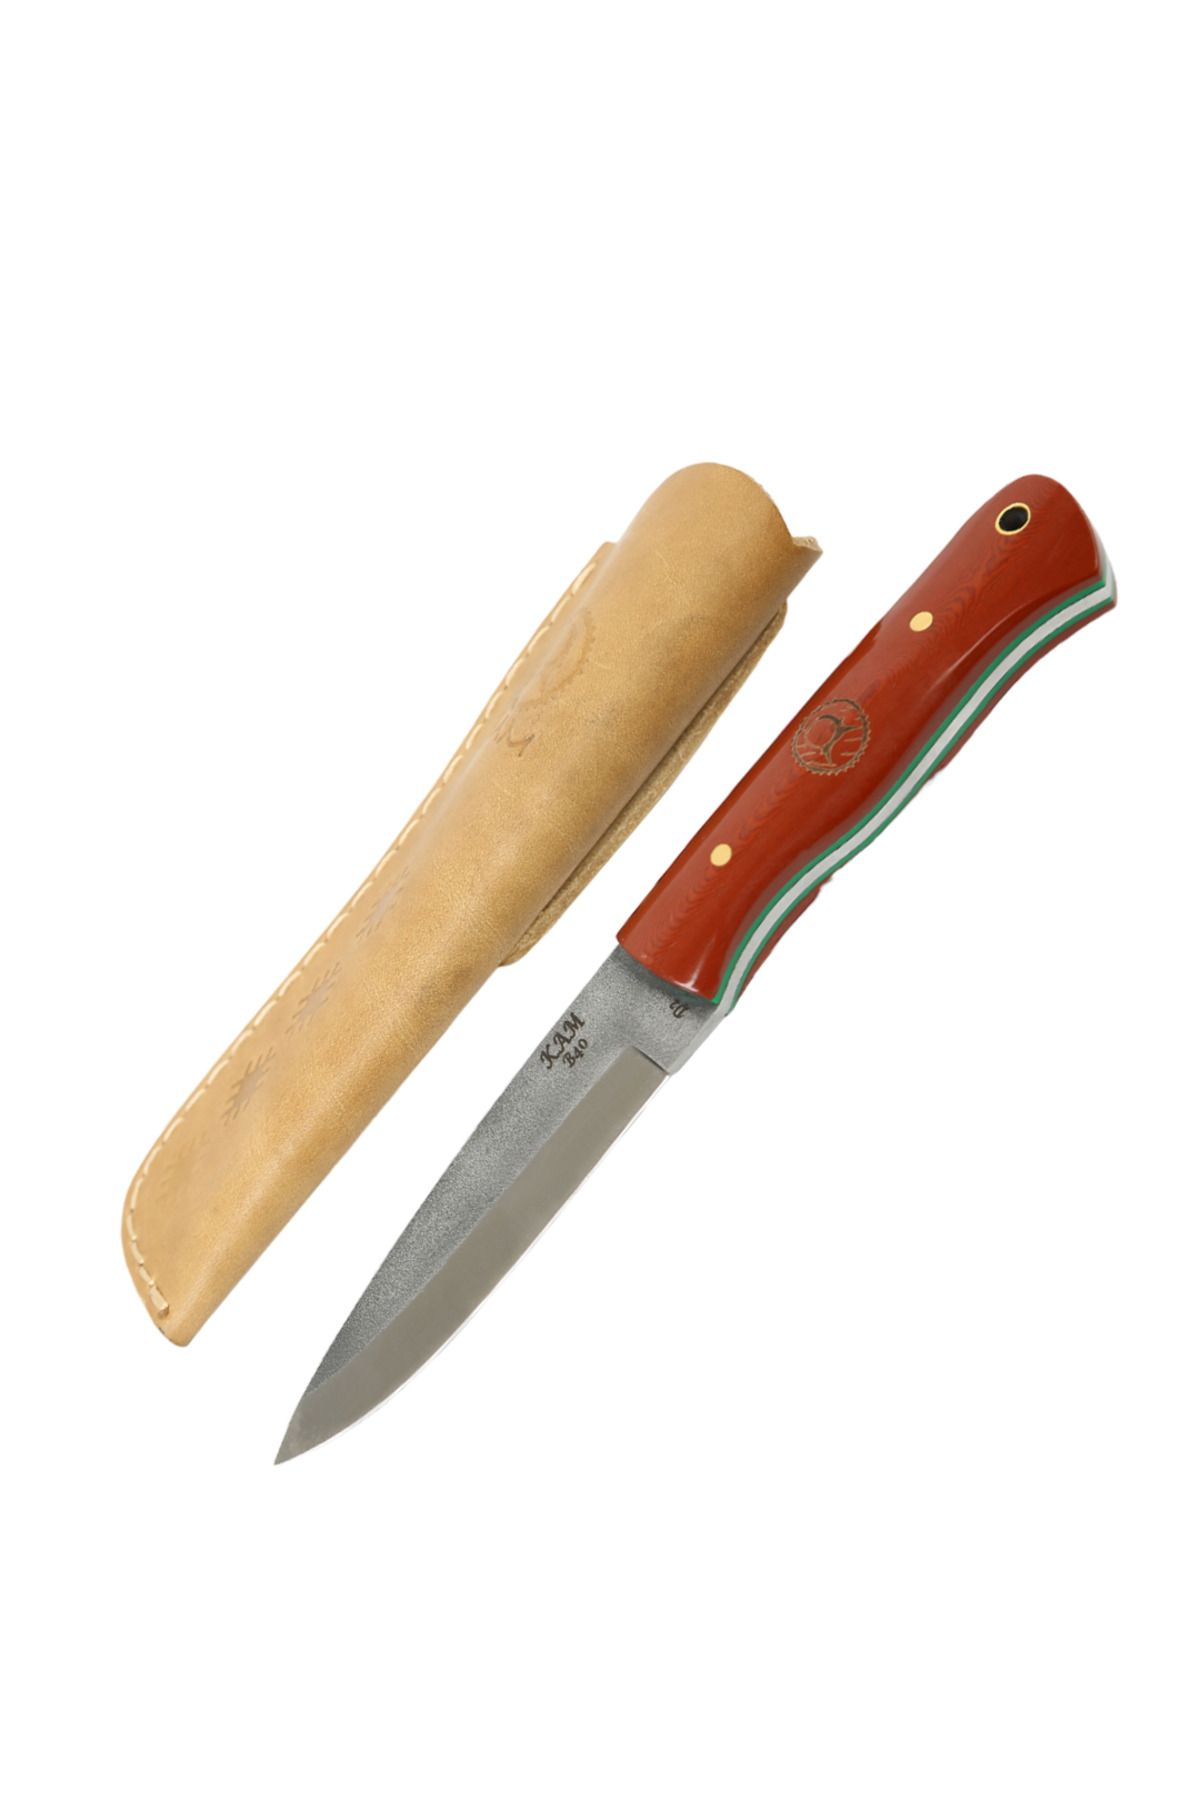 KAM KNIFE El Yapımı Kaliteli Fonksiyonel Kılıflı Sabit Bıçak-d2 Çelik - B40 D2 Kızıl Kahverengi